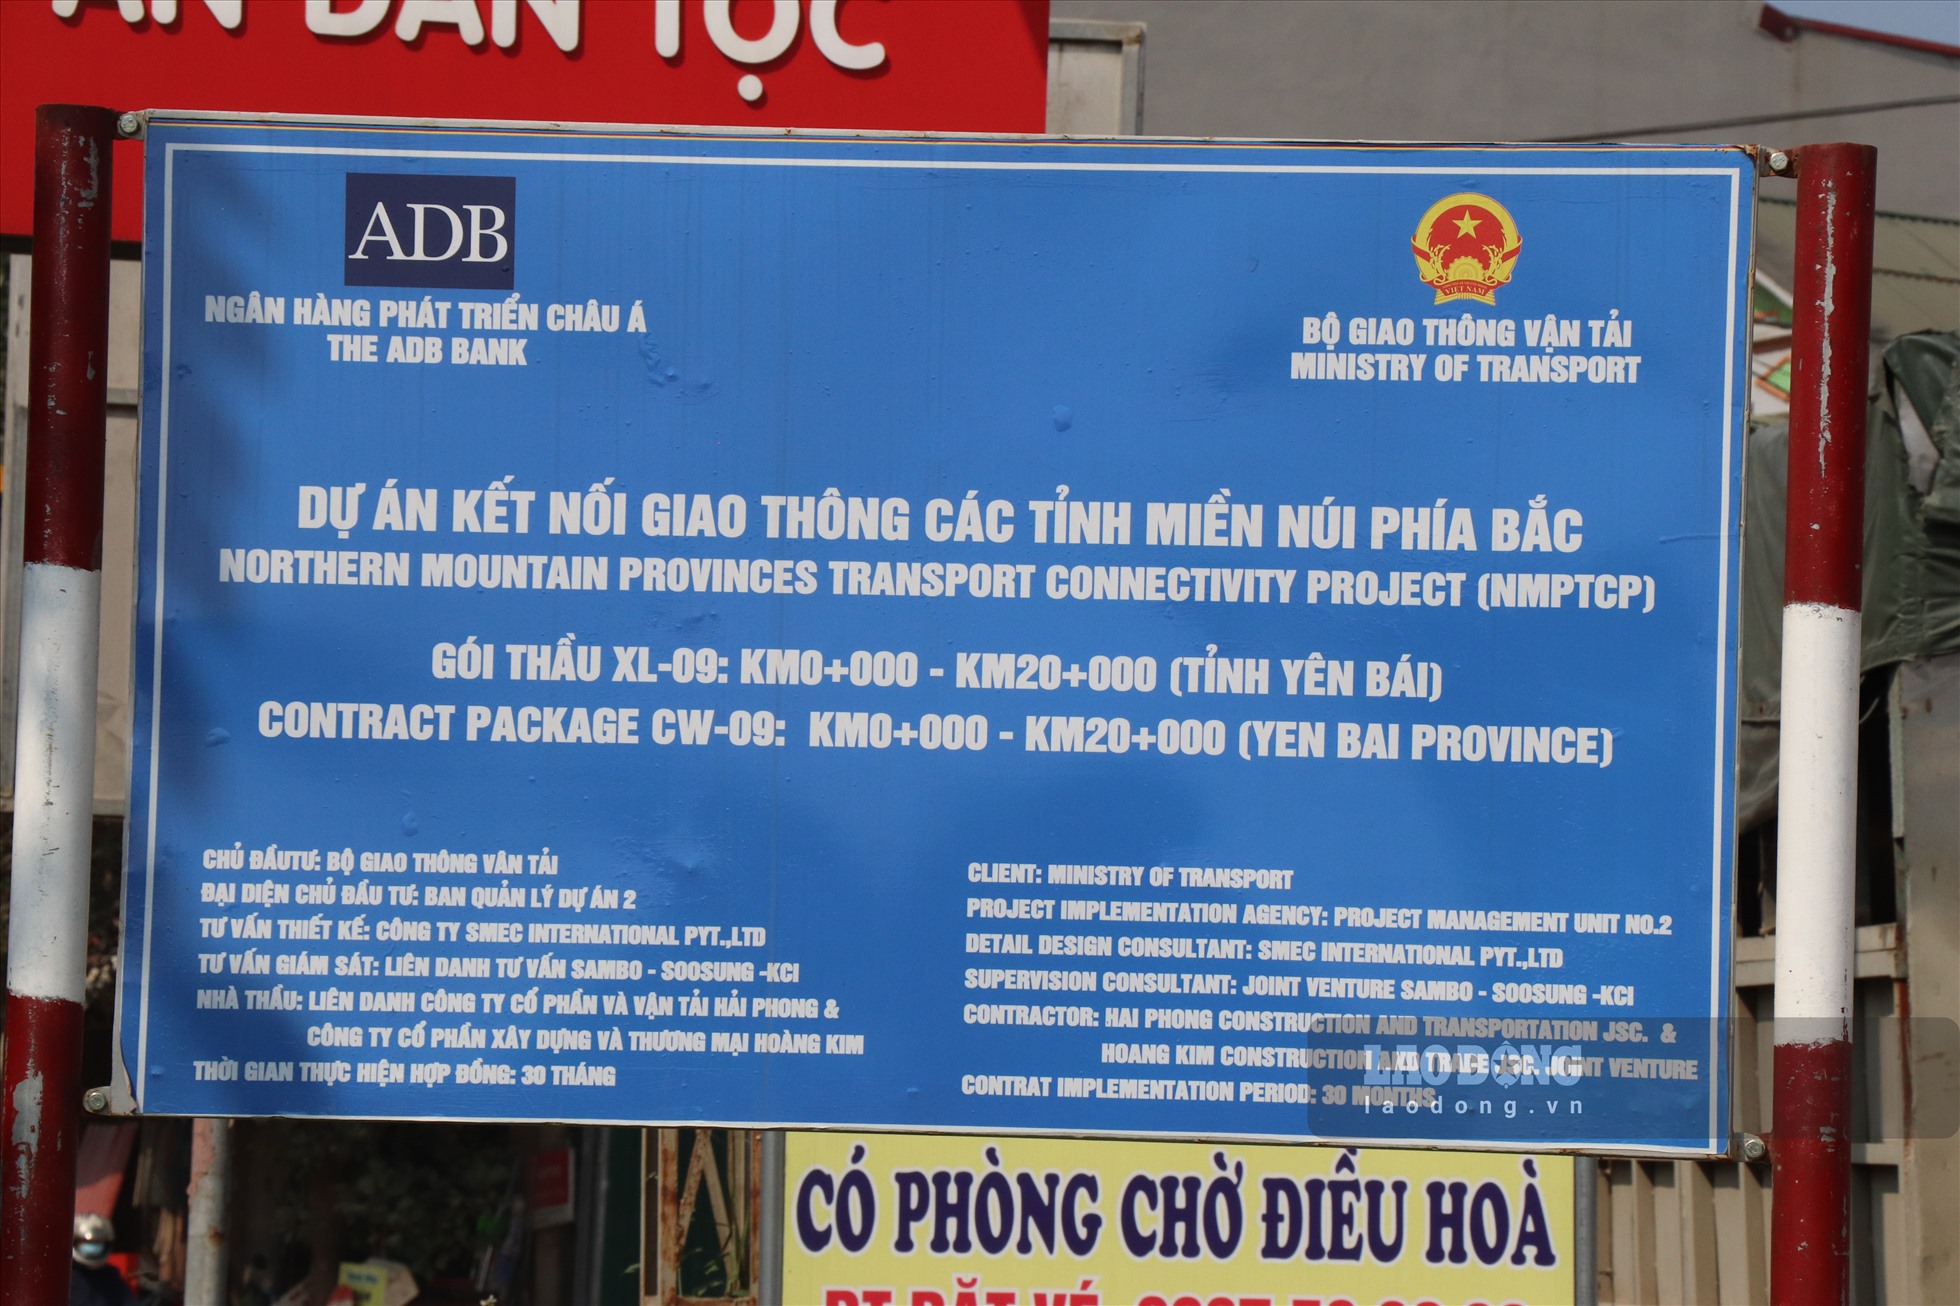 Dự án kết nối giao thông các tỉnh miền núi phía Bắc do Ngân hàng phát triển Châu Á và Chính phủ Úc tài trợ nhằm rút ngắn hành trình từ các trung tâm chính trị kinh tế của tỉnh Lai Châu, Lào Cai, Yên Bái và các địa phương khác có liên quan về thủ đô Hà Nội, nâng cao hiệu quả khai thác đường cao tốc Hà Nội - Lào Cai.